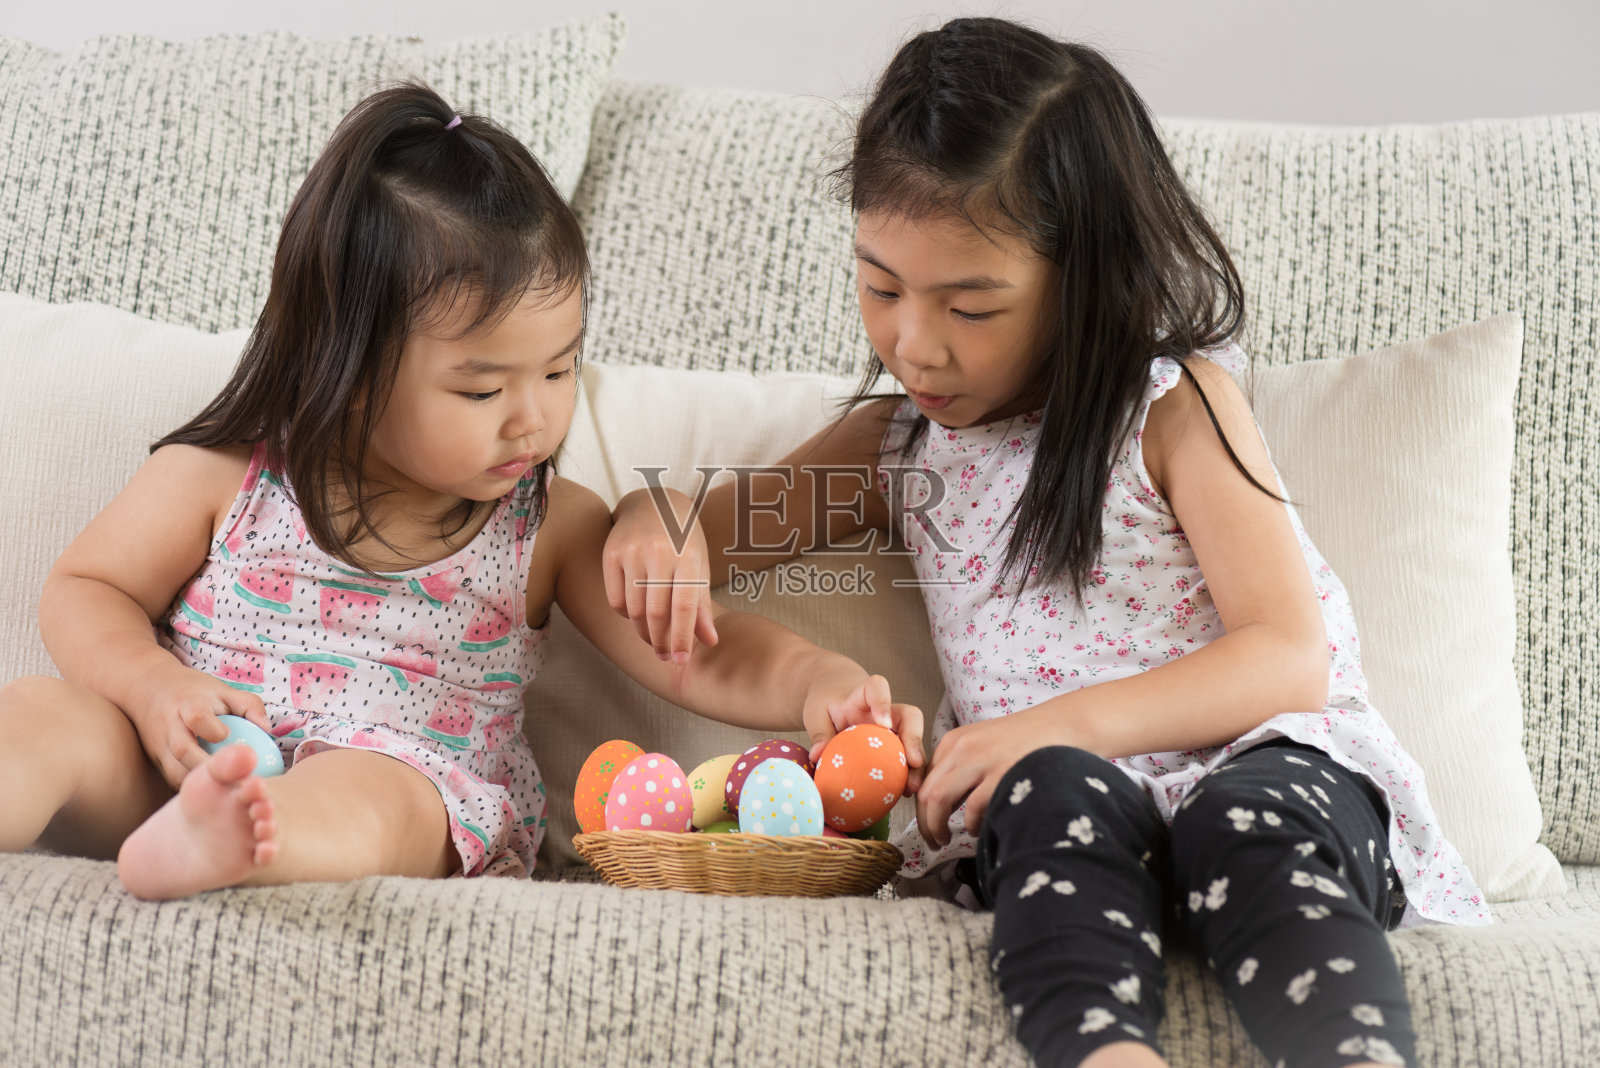 复活节快乐!两个可爱的小孩坐在沙发上，他们的窝里或篮子里放着复活节彩蛋。照片摄影图片